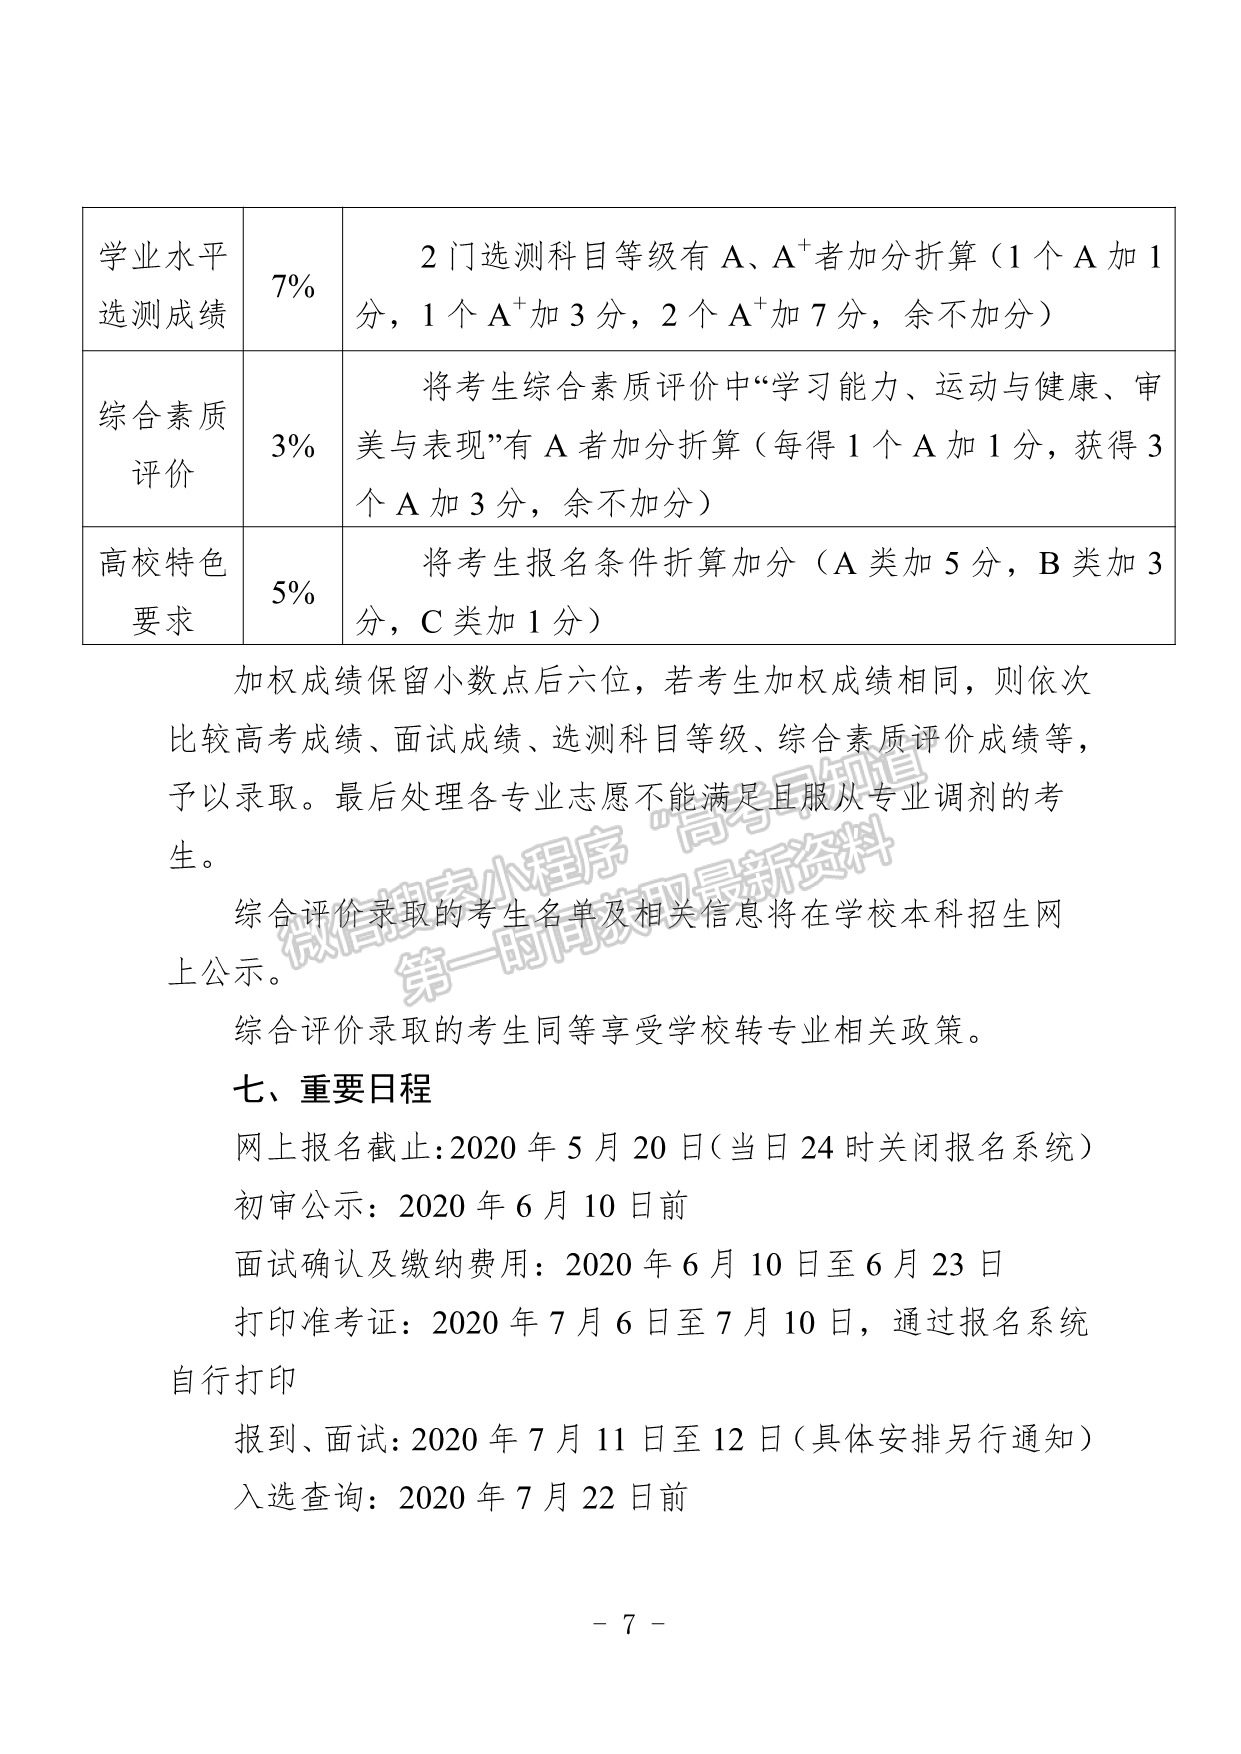 南京中医药大学2020年综合评价录取招生简章